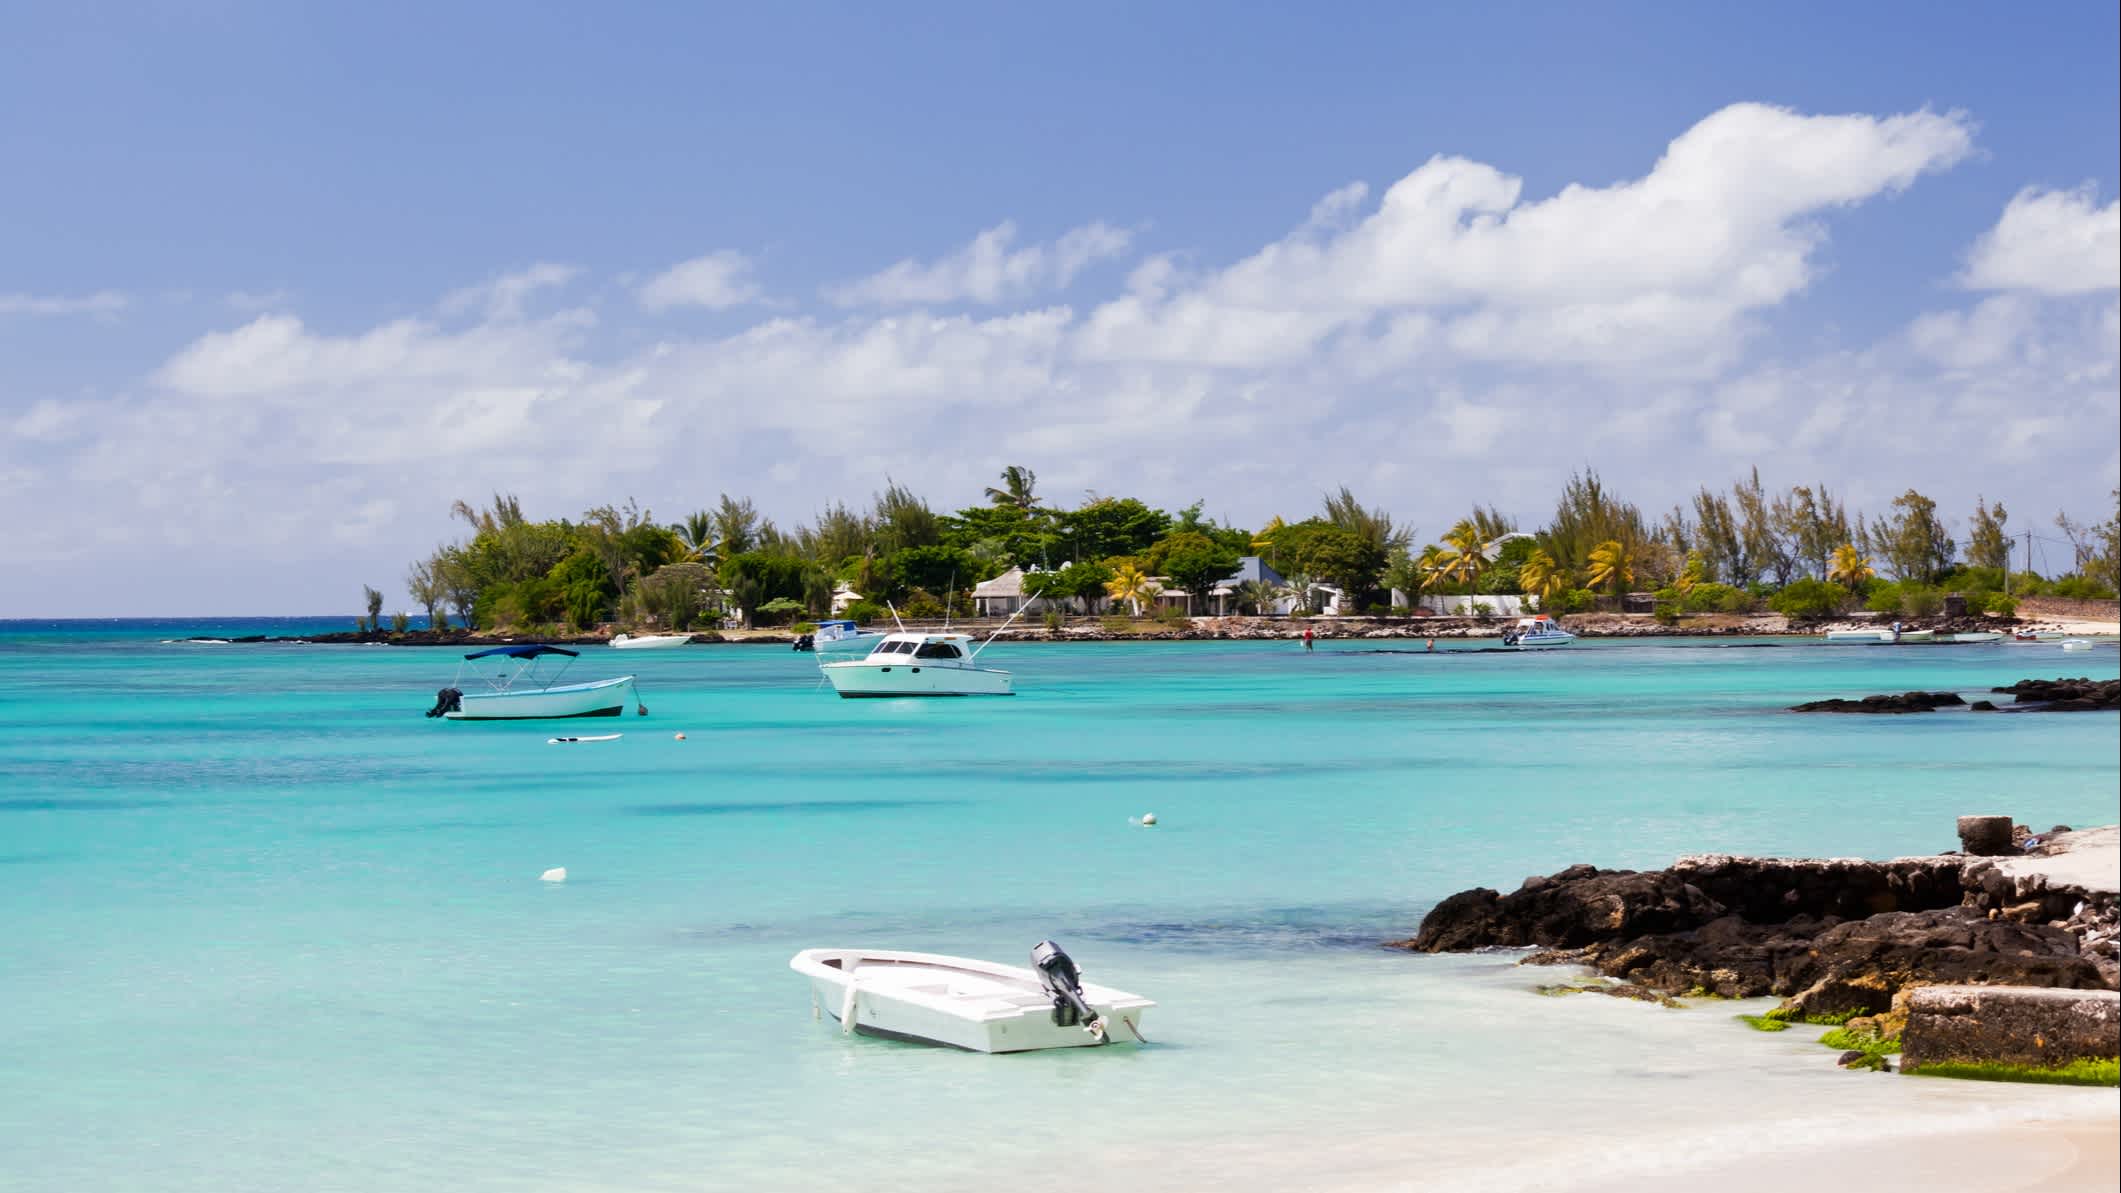 Bateaux sur l'eau turquoise au bord de la plage de sable blanc de Pereybere, Ile Maurice 